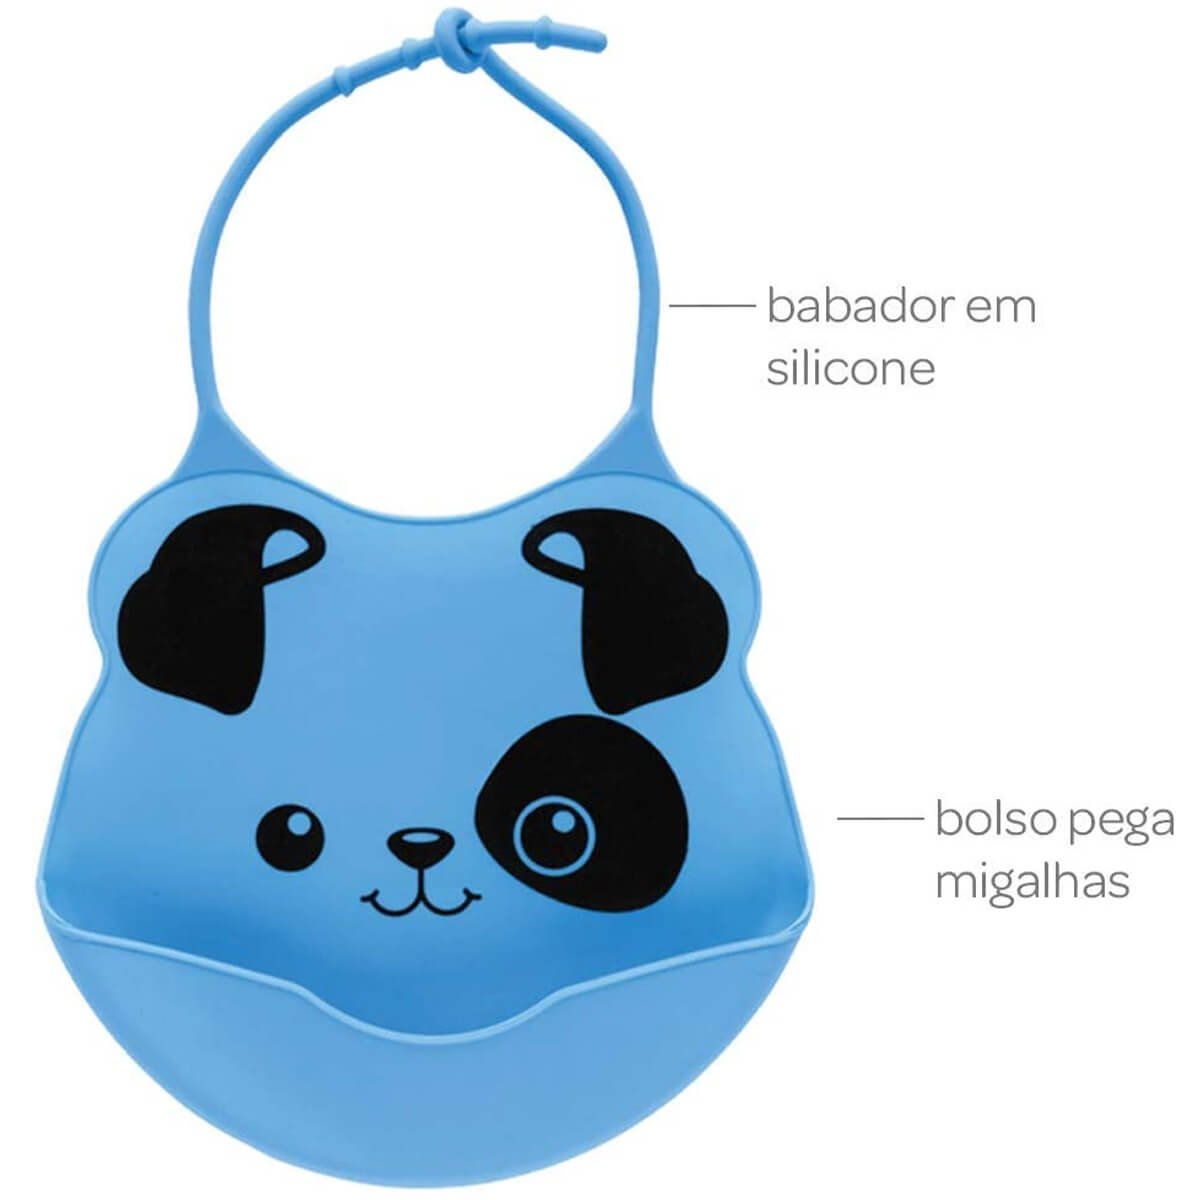 Babador de Silicone com Pega Migalhas para Bebê Buba Cachorrinho Azul - 2